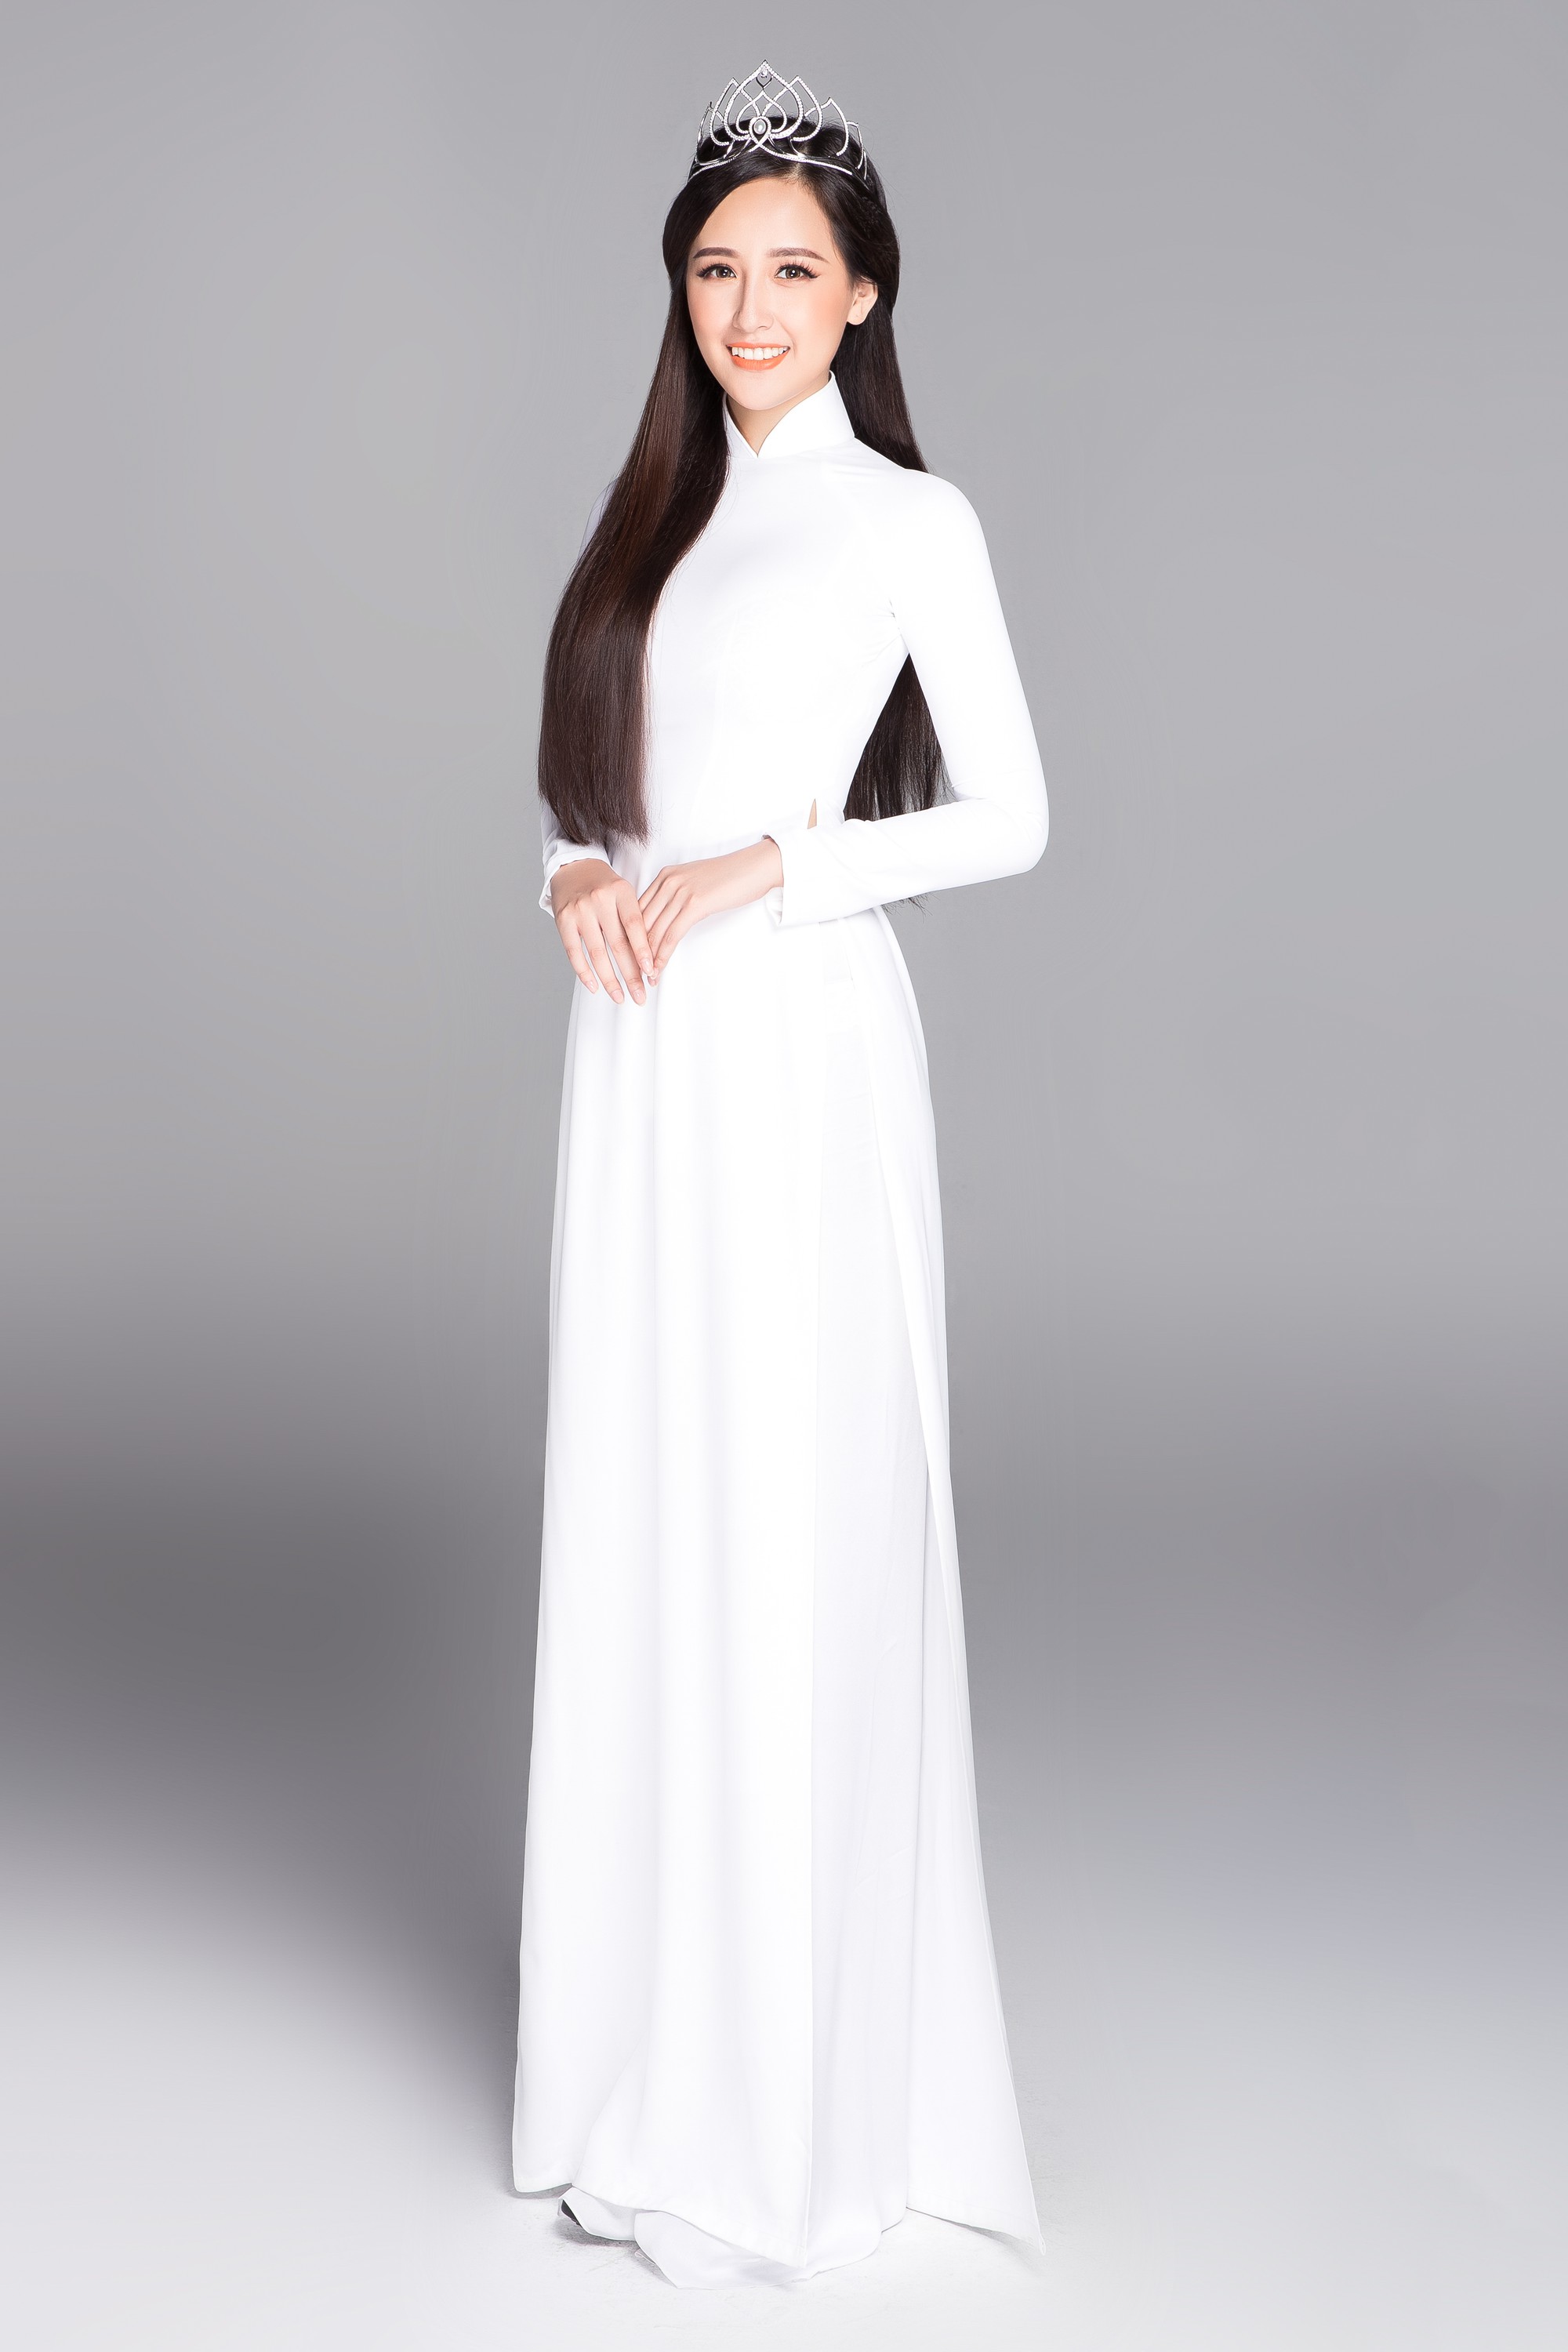 Không váy áo gợi cảm, Hoa hậu Kỳ Duyên, Đặng Thu Thảo lại gợi nhớ cả bầu trời thanh xuân khi diện áo dài trắng nữ sinh - Ảnh 10.